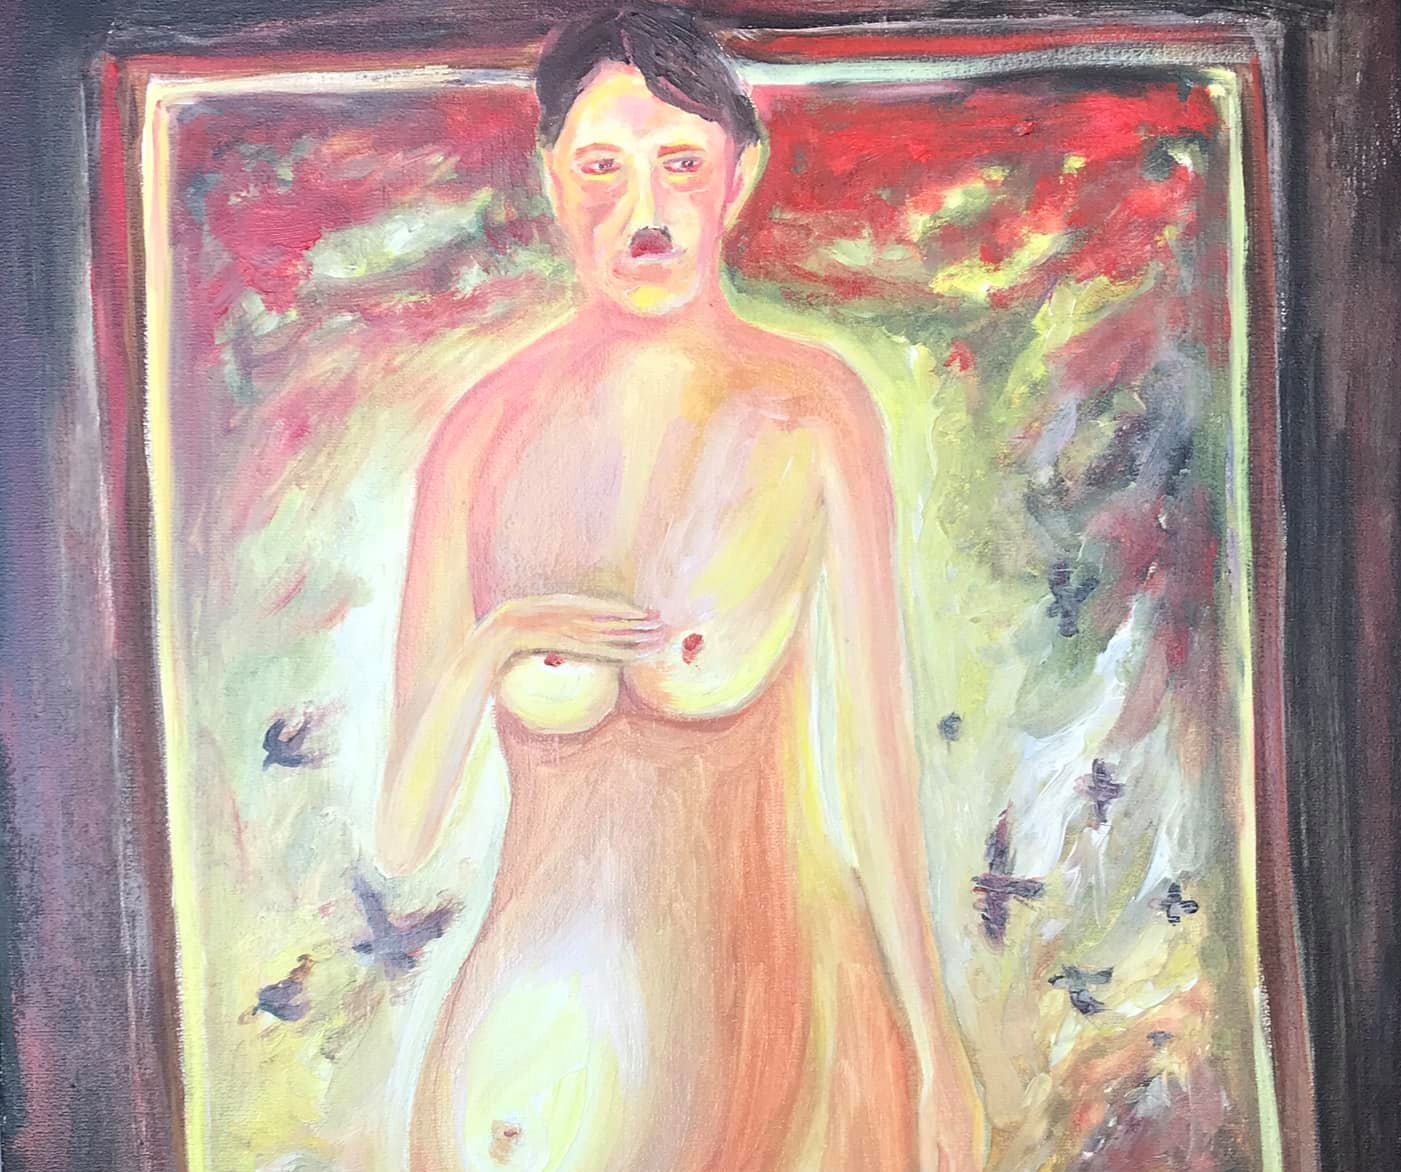 Клитина опубликовала свою картину с беременным Гитлером в знак протеста против патриархата